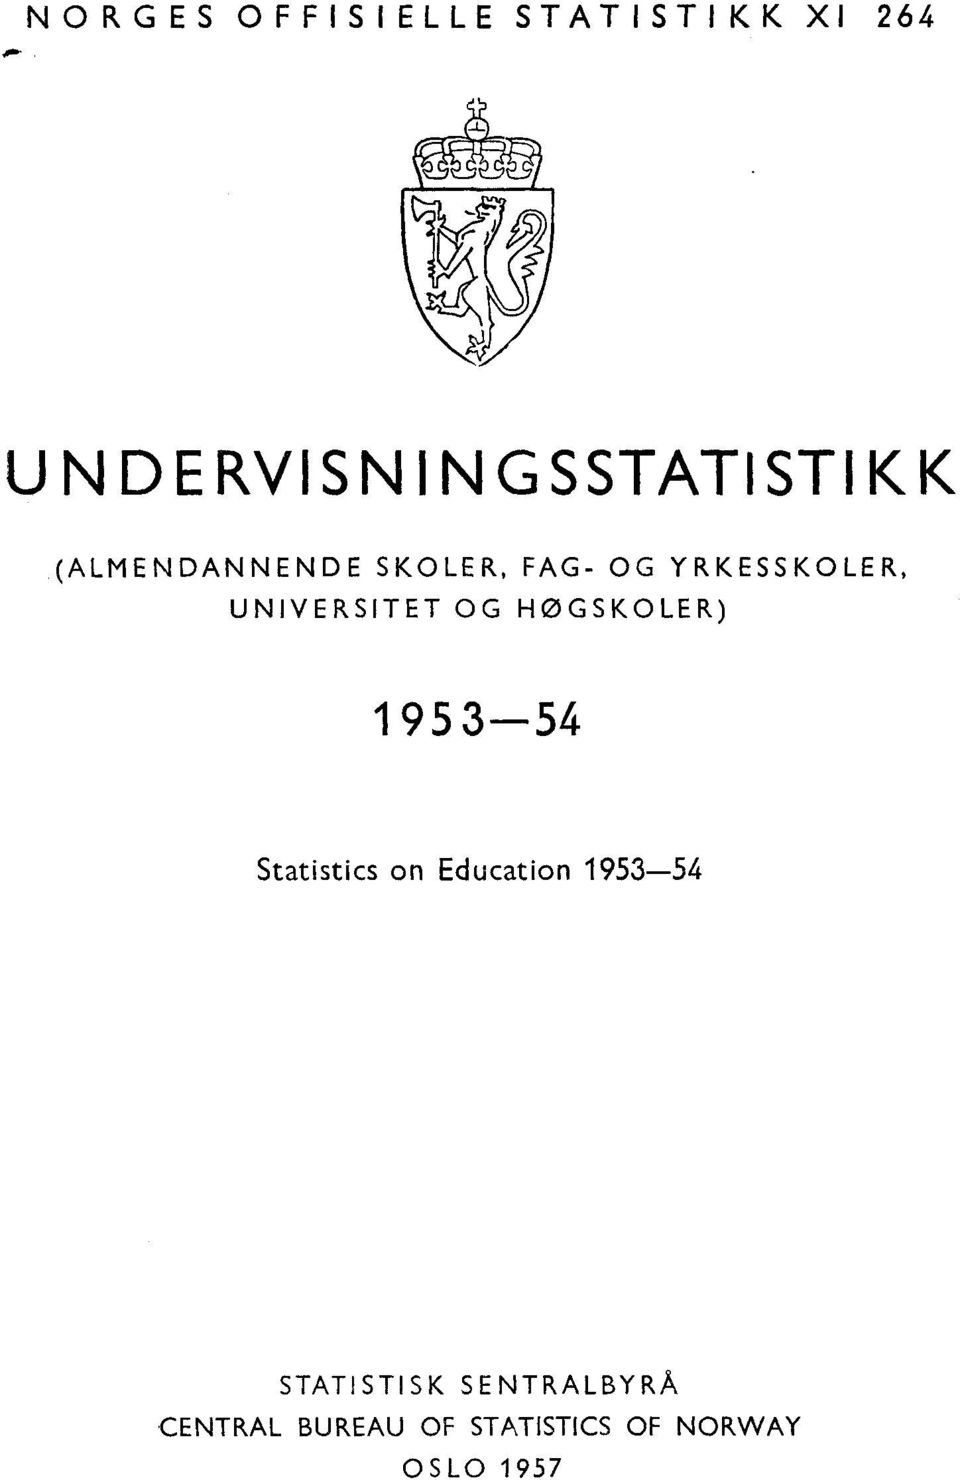 YRKESSKOLER, UNIVERSITET OG HØGSKOLER) - Statistics on